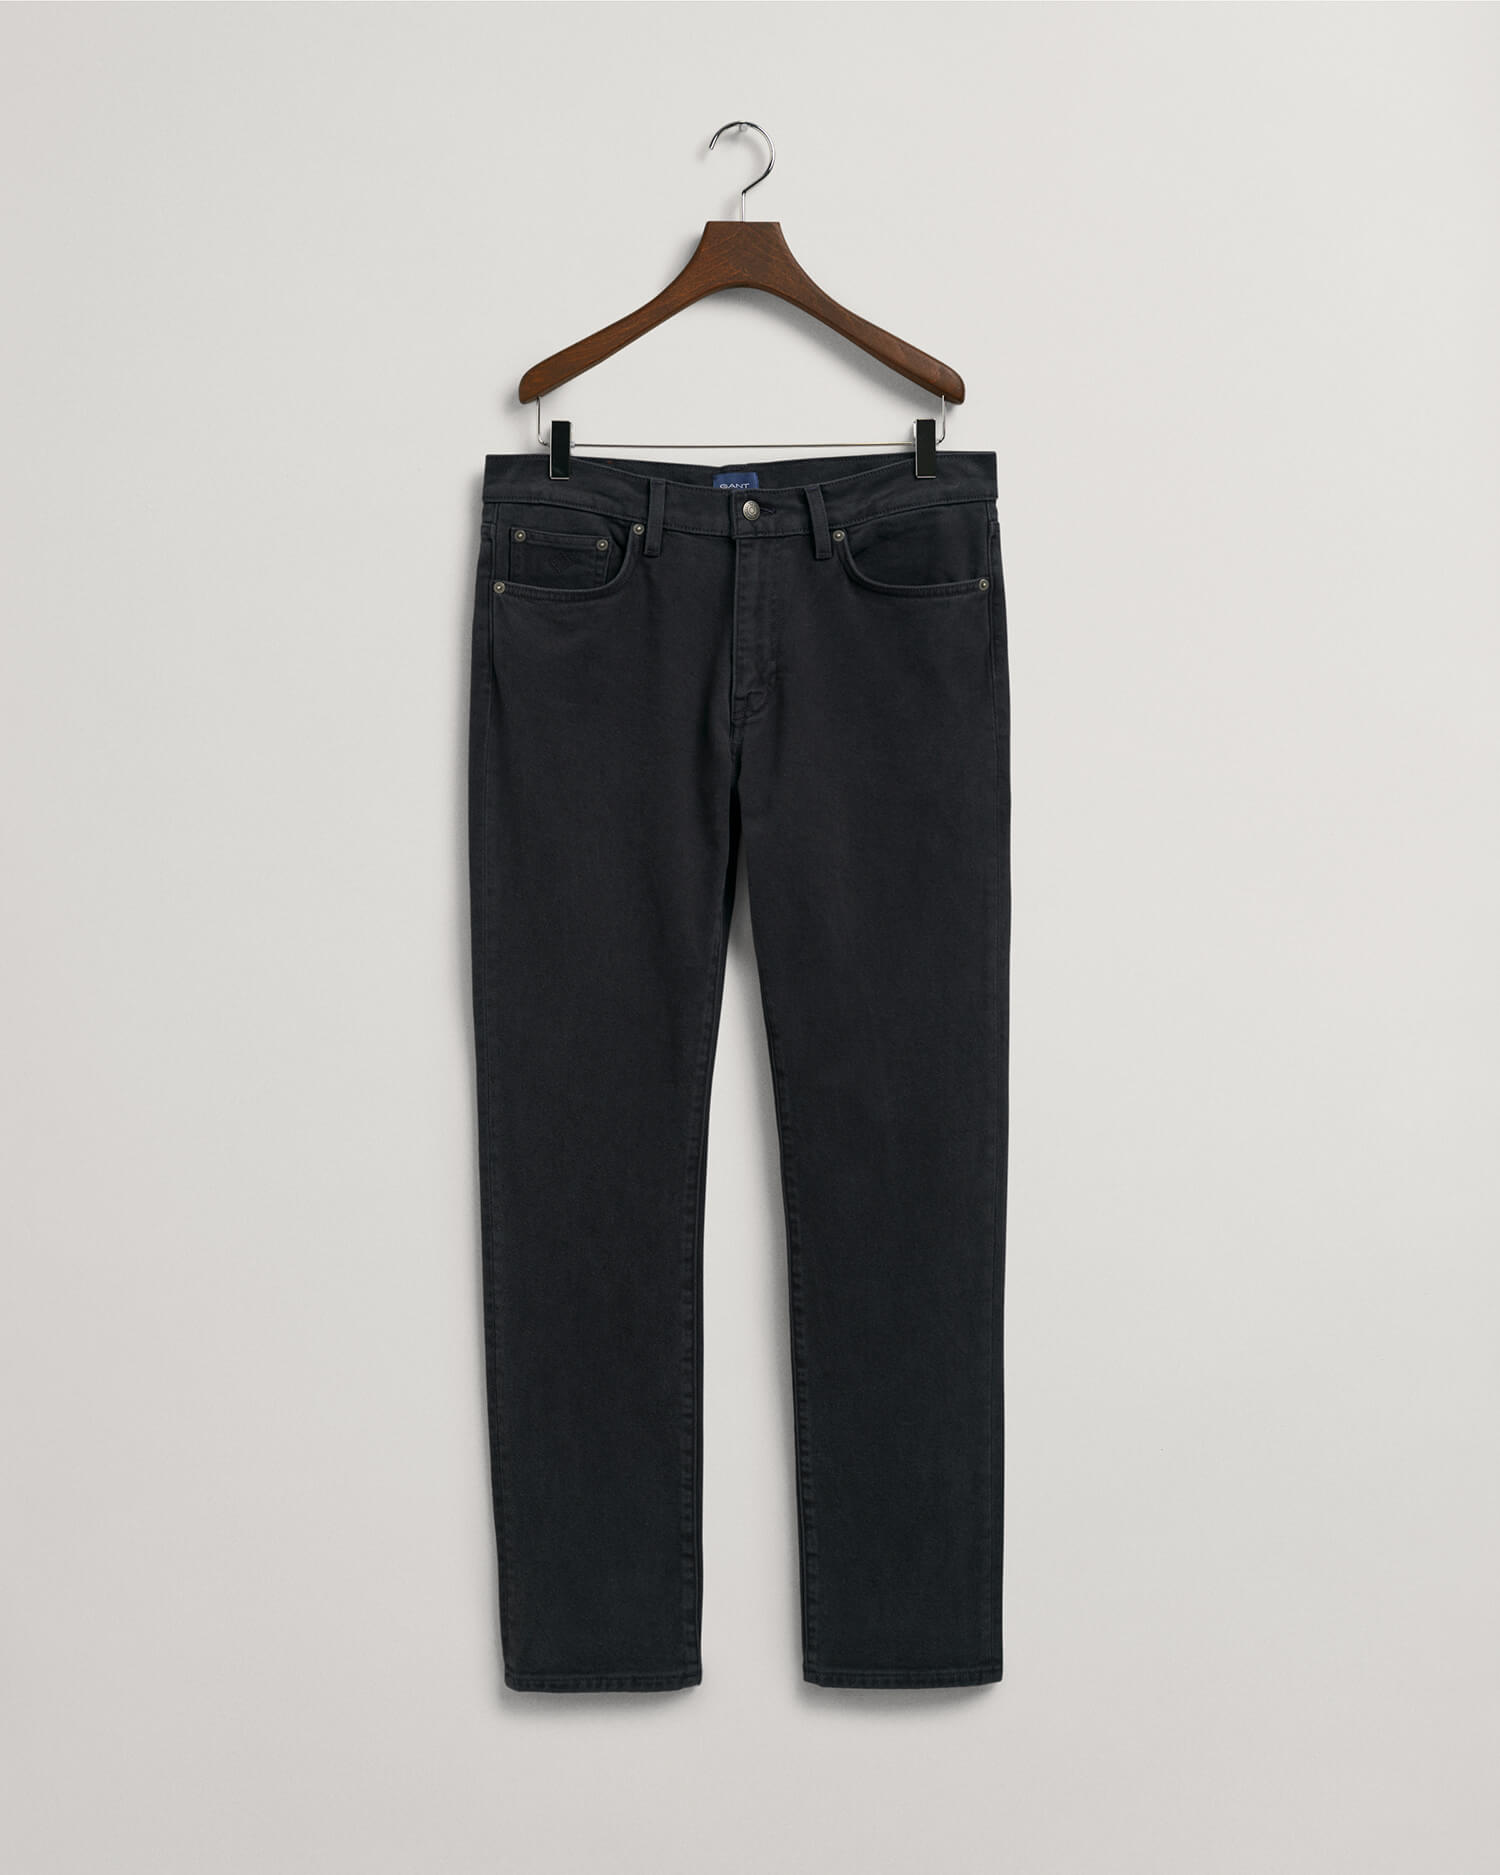 Gant Arley Soft Twill Jeans